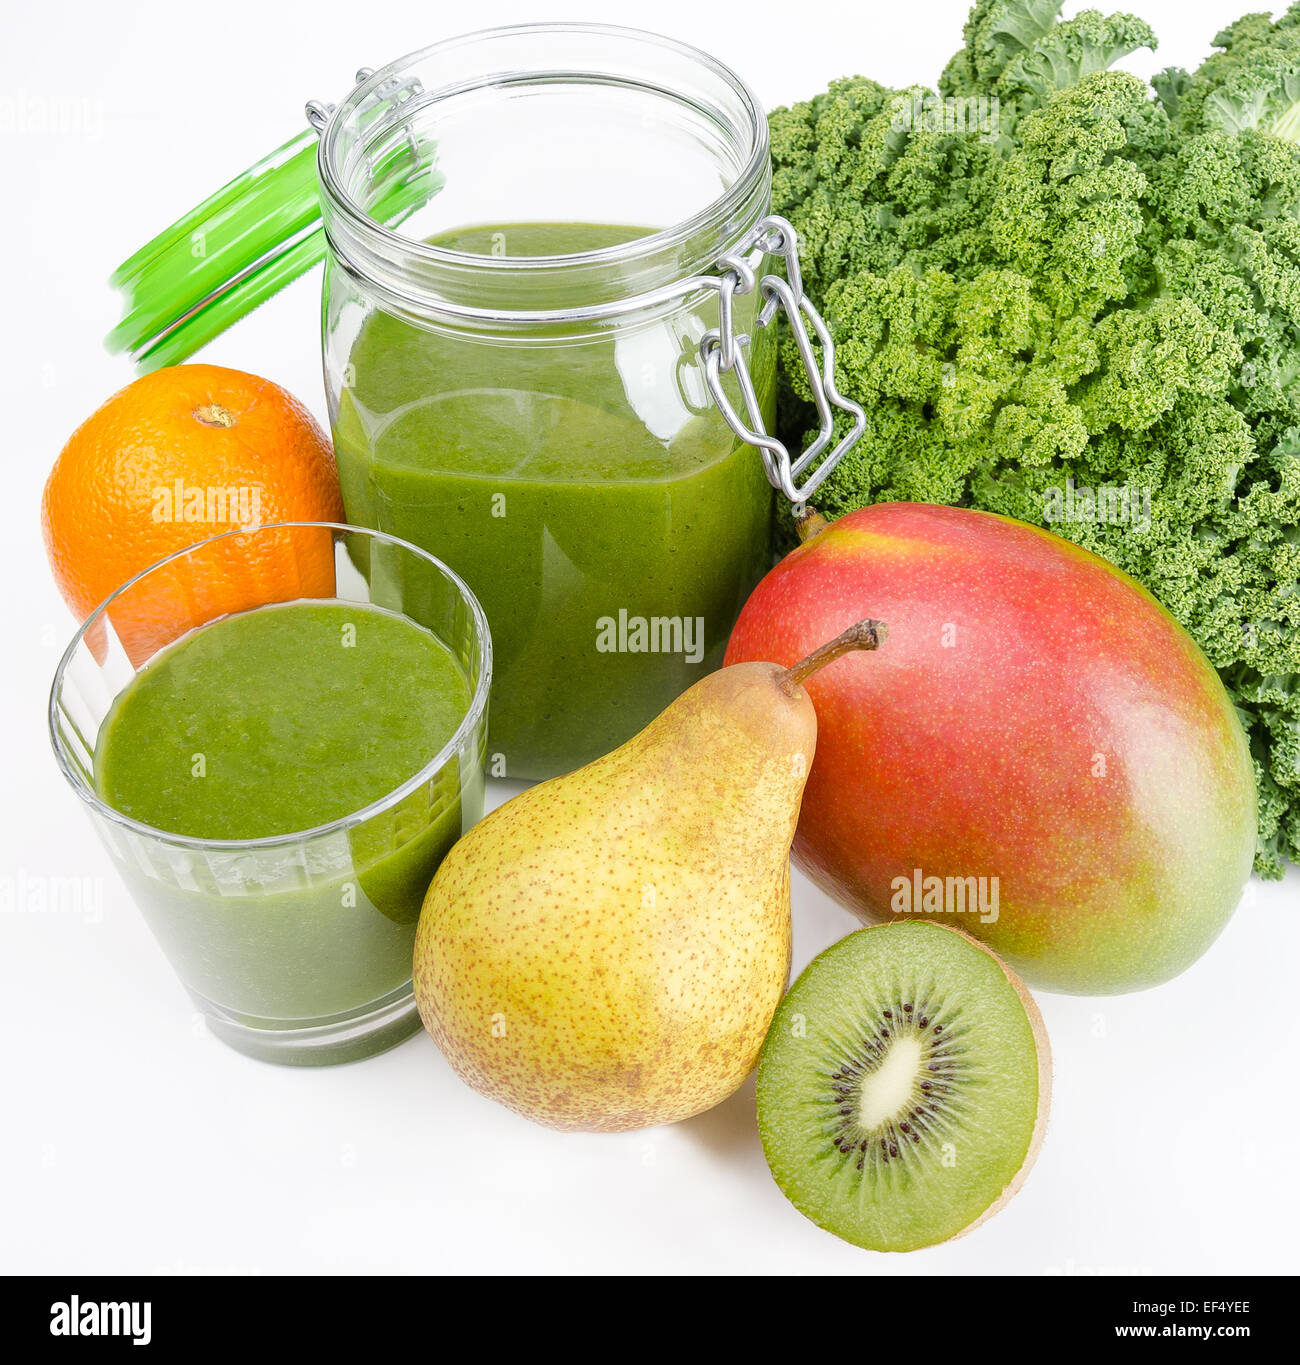 Grüner Smoothie im Glas und in einem offenen Glas mit frischen Grünkohl. Ein rohes, gesunde vegane Getränk der grünen Blätter und Früchte. Stockfoto